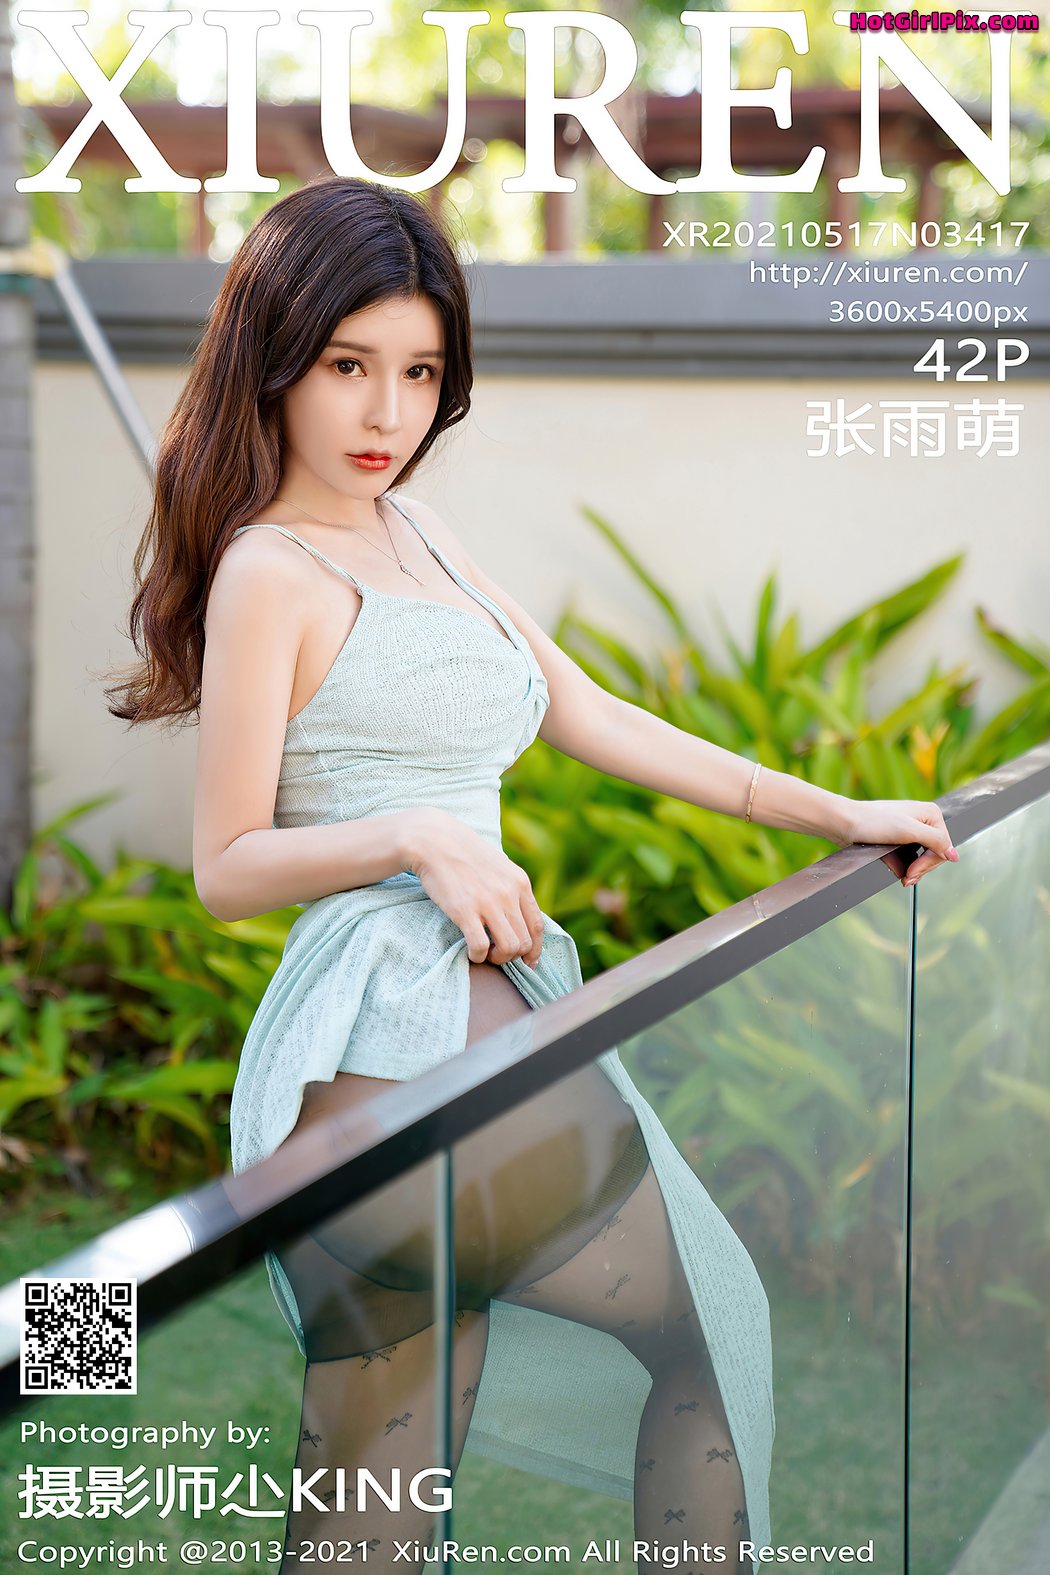 [XIUREN] No.3417 Zhang Yu Meng 张雨萌 Cover Photo